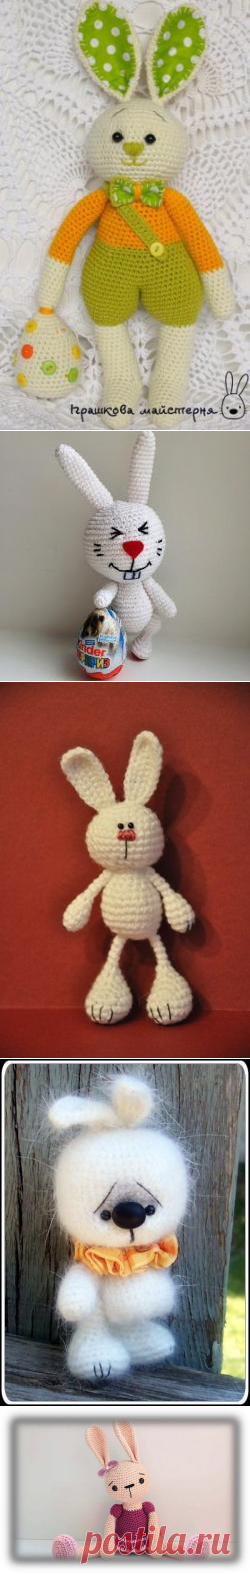 Вяжем пасхальных кроликов, чтобы быть счастливыми весь год! Подборка зайчиков/кроликов с описанием (в комментариях к каждому фото). 🐰